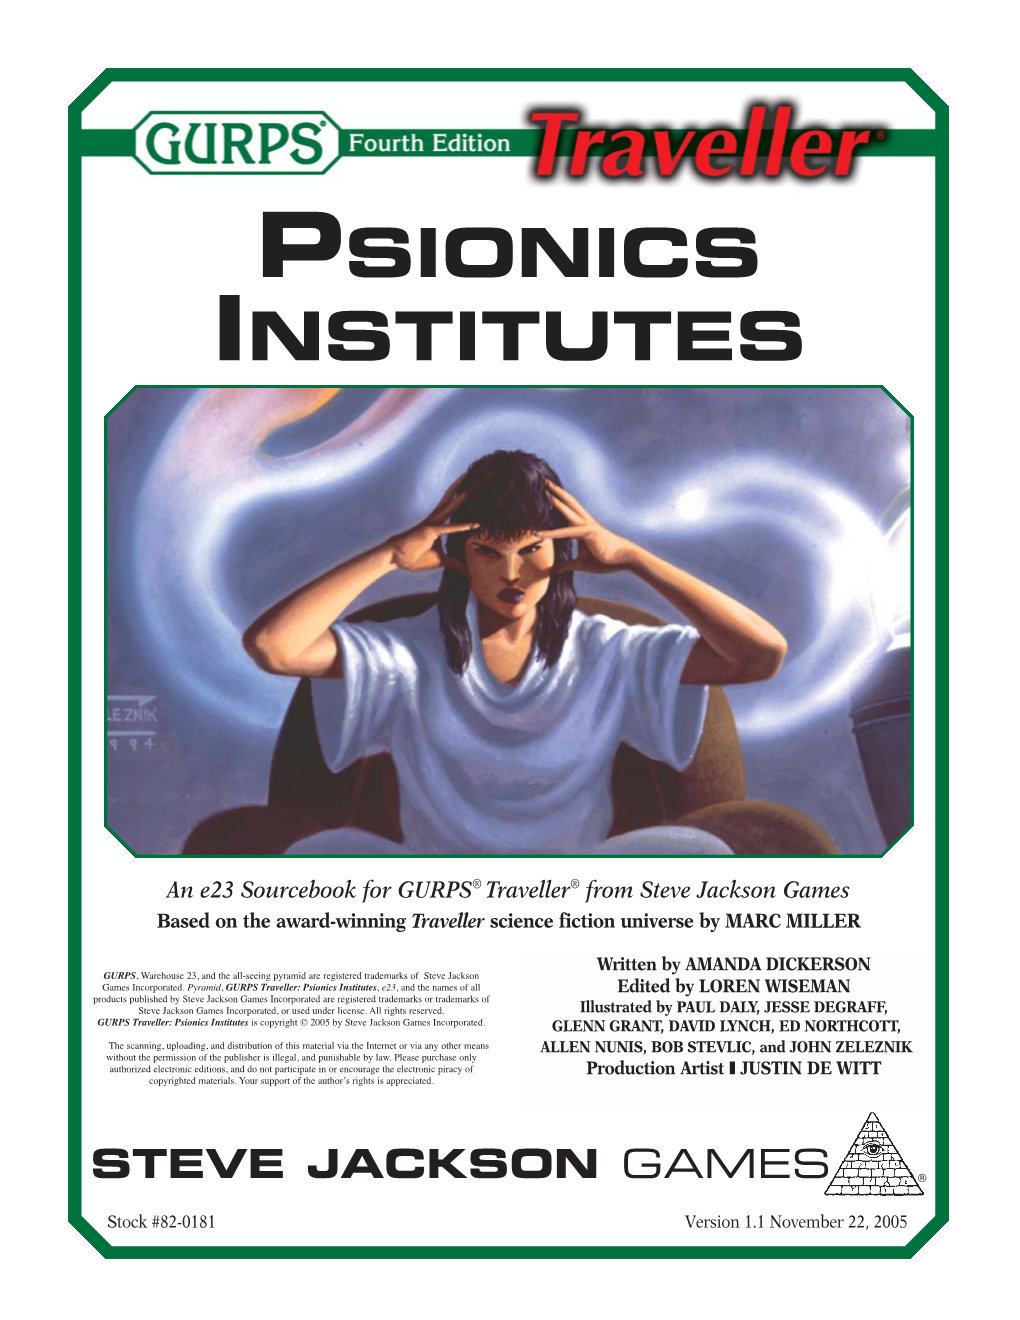 GURPS Traveller Classic: Psionic Institutes